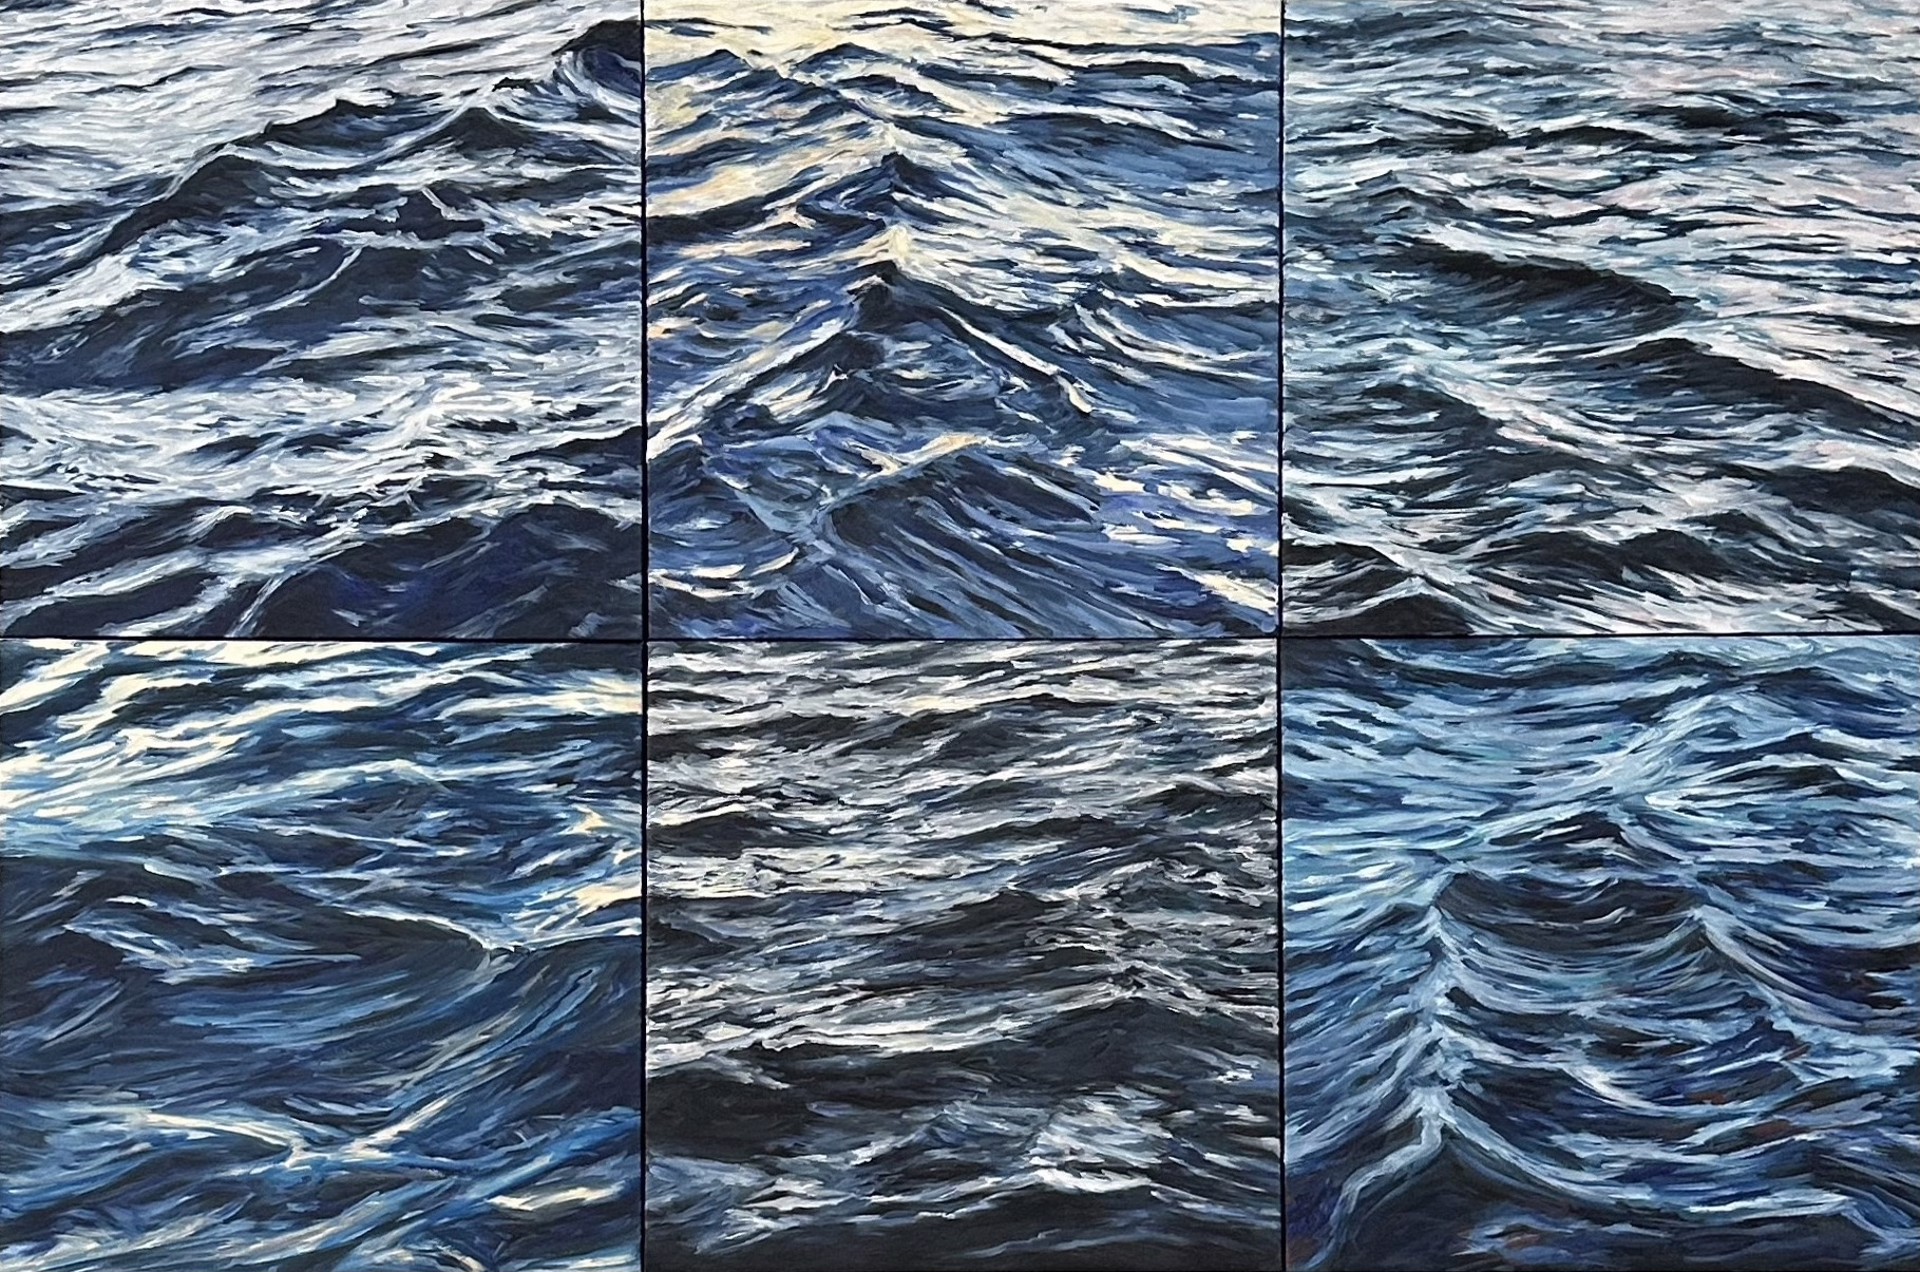 Lahaina Waves 12 by Valerie Eickmeier